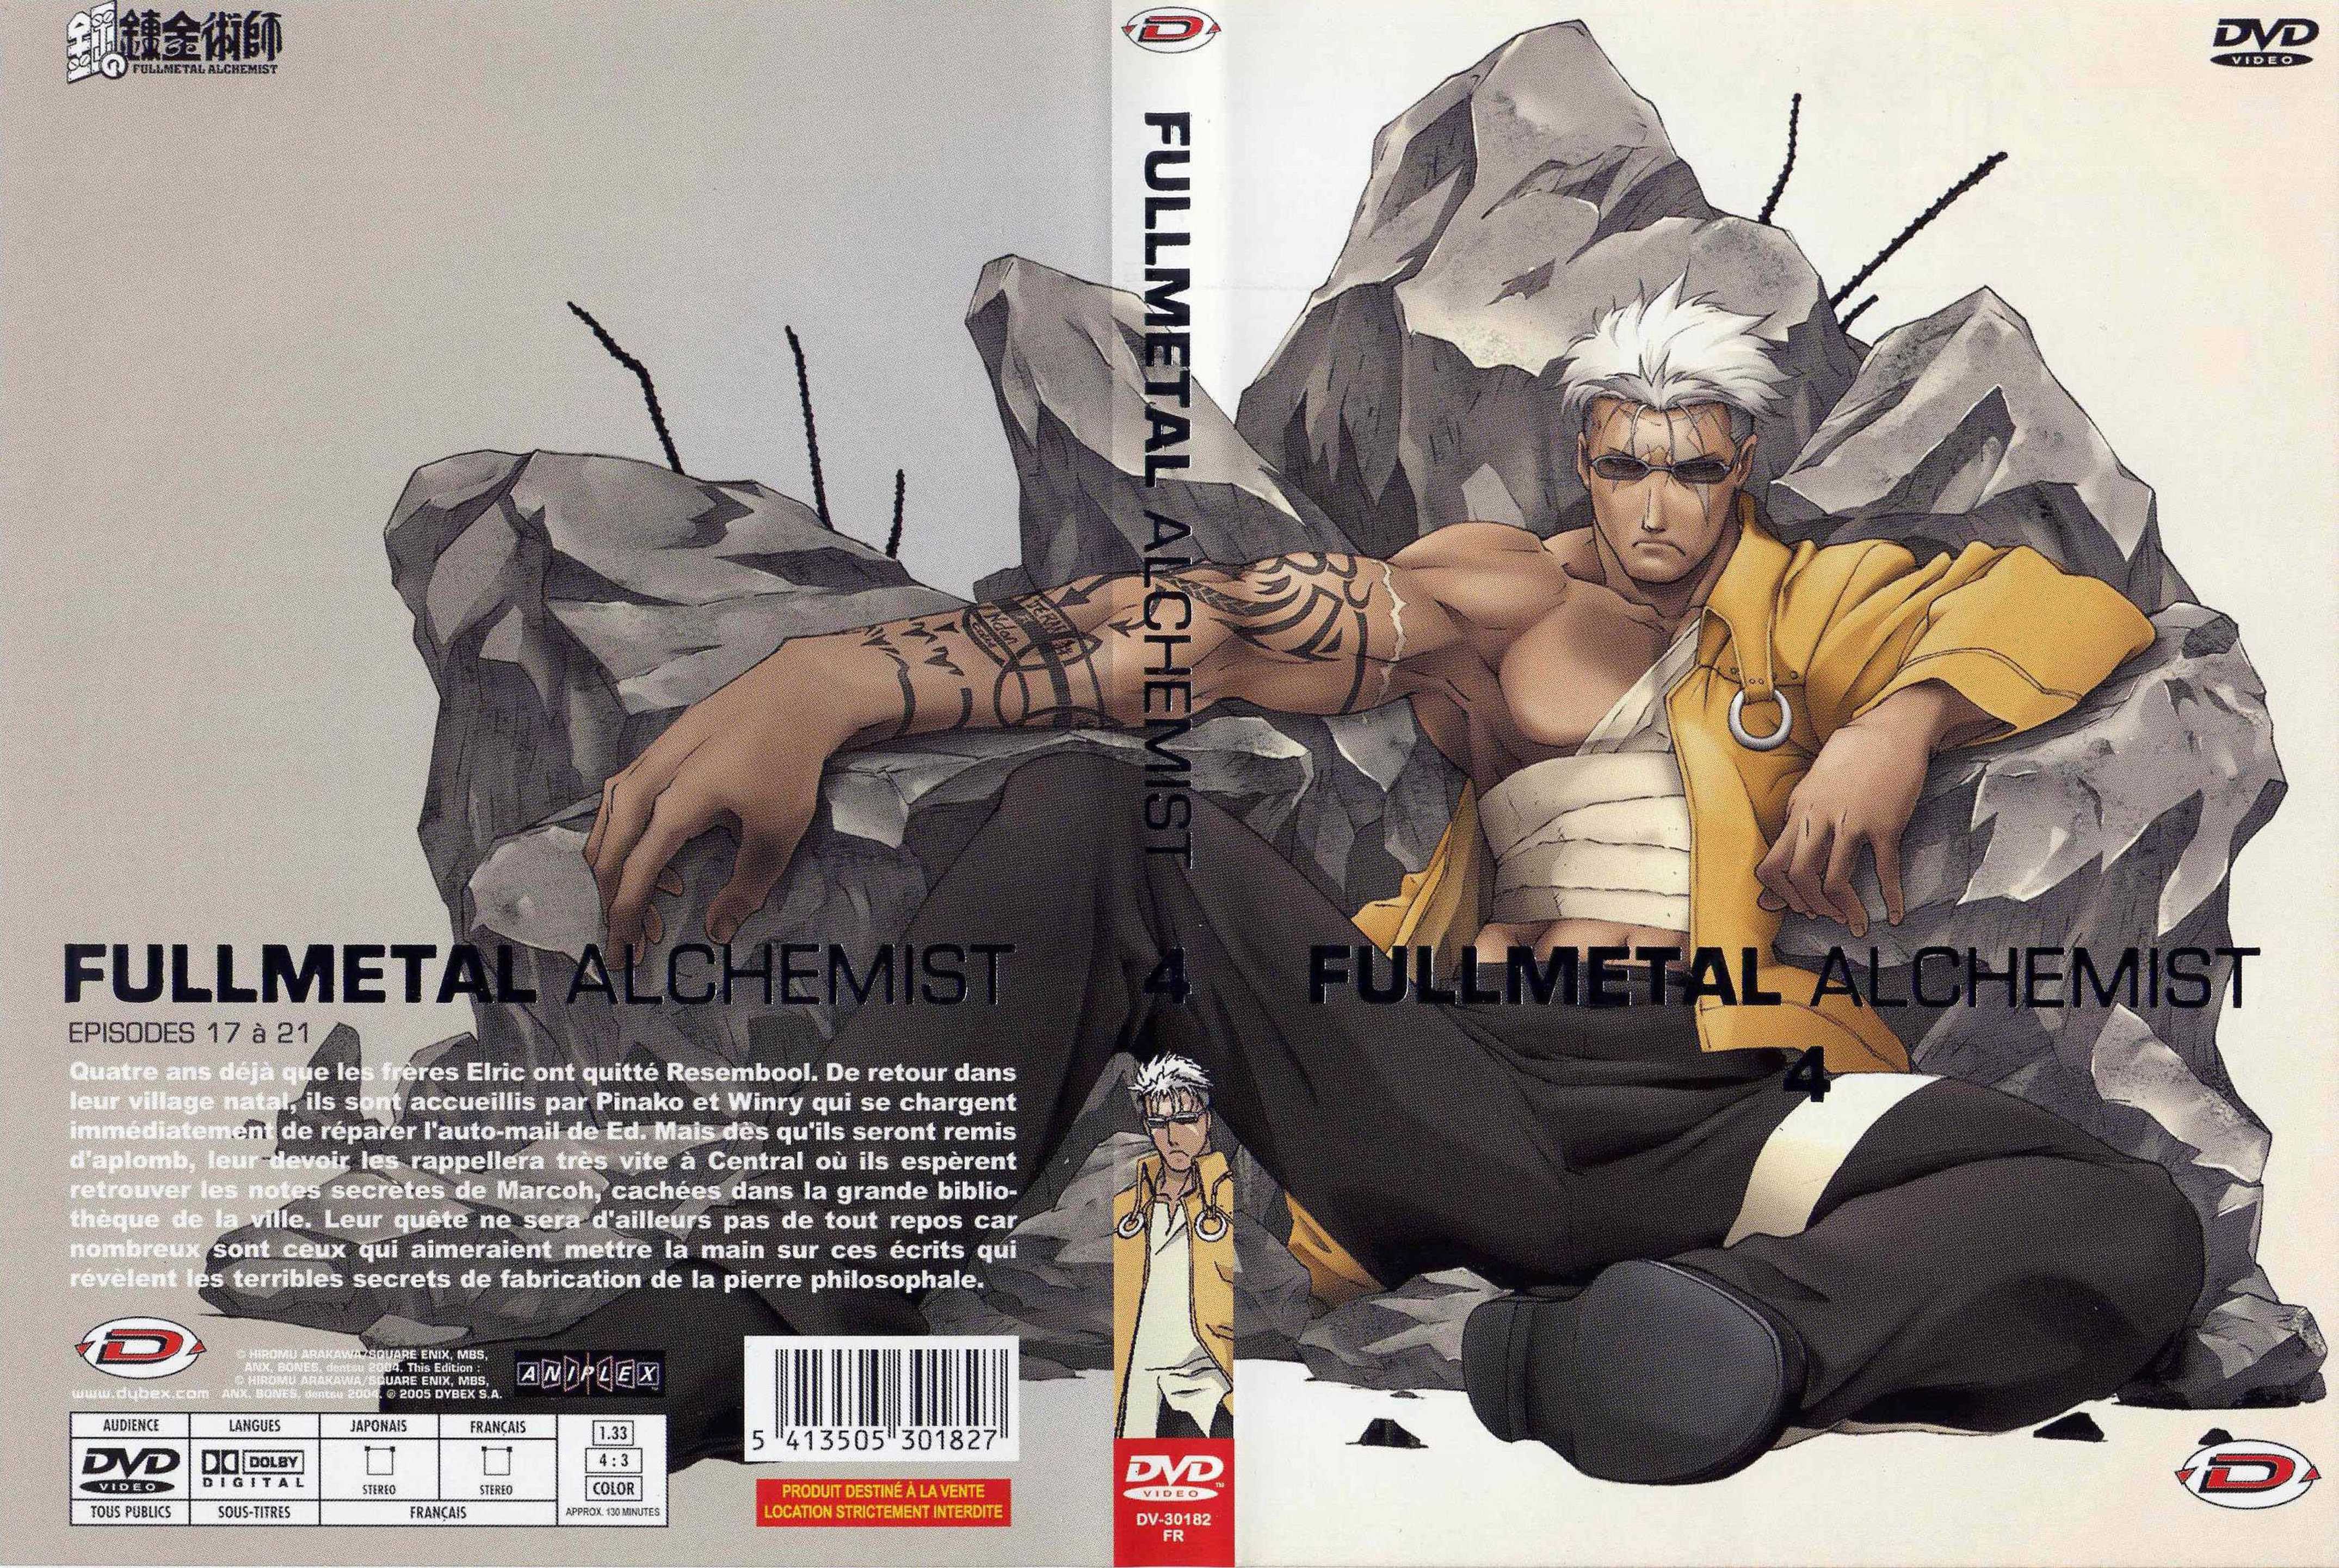 Jaquette DVD Fullmetal alchemist vol 4